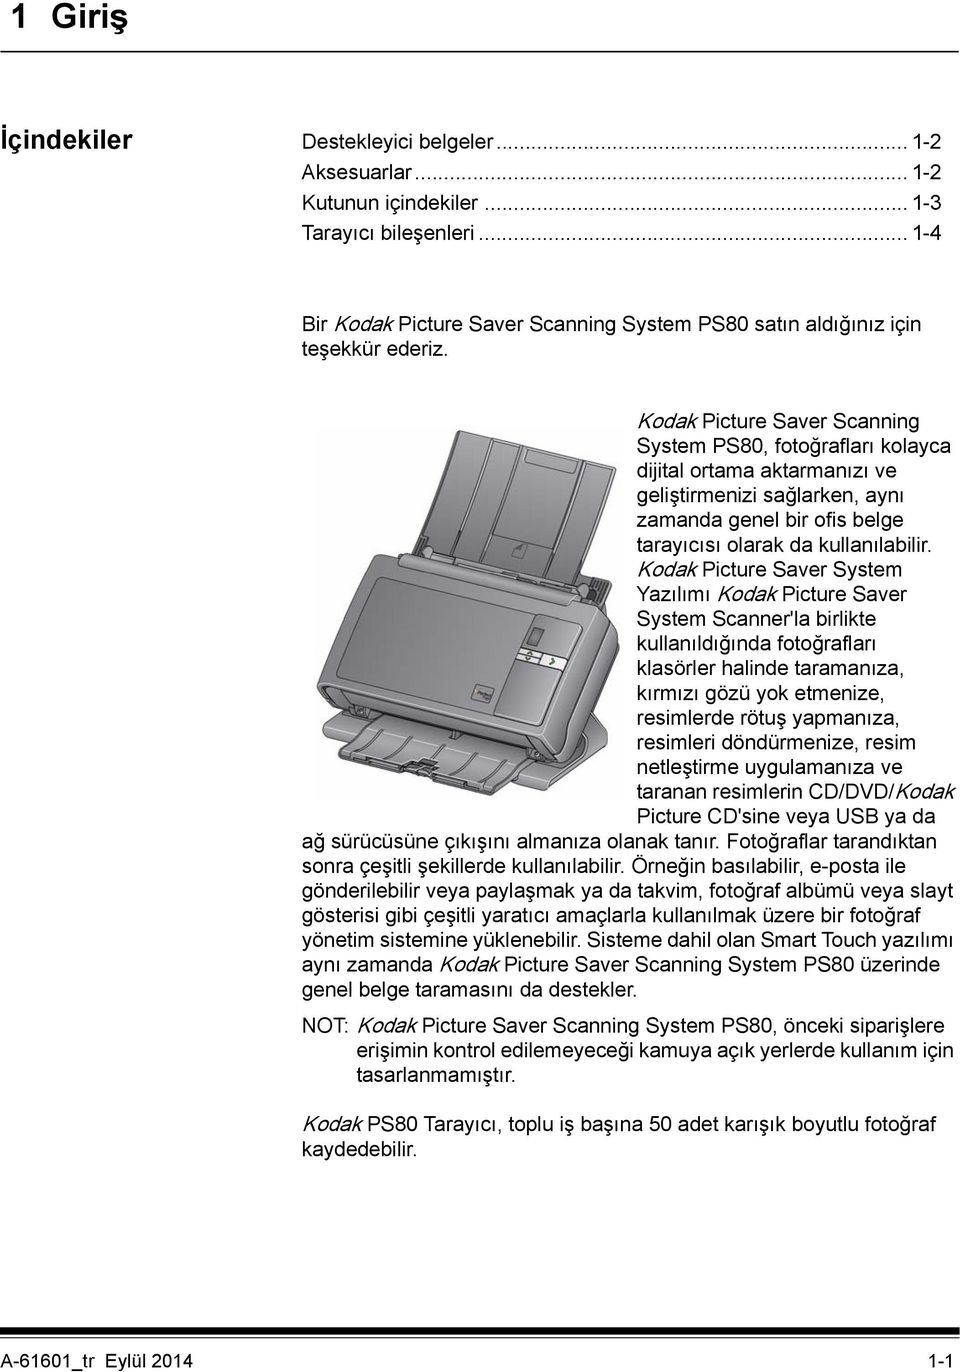 Kodak Picture Saver Scanning System PS80, fotoğrafları kolayca dijital ortama aktarmanızı ve geliştirmenizi sağlarken, aynı zamanda genel bir ofis belge tarayıcısı olarak da kullanılabilir.